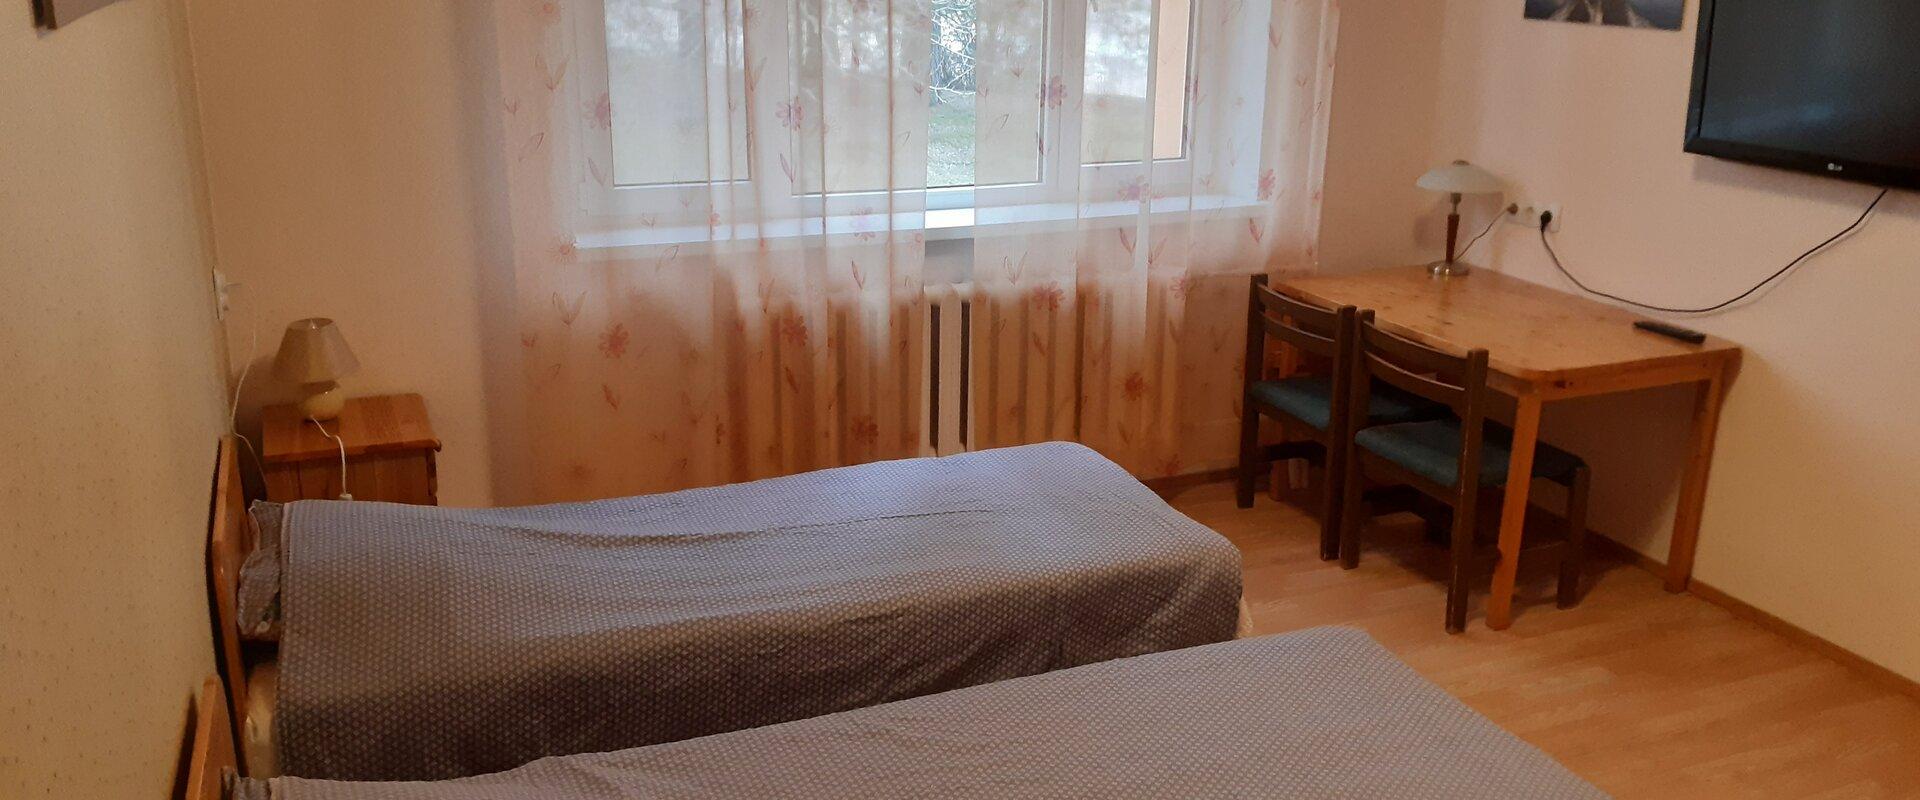 Zweibettzimmer der Privatunterkunft Jõesuu